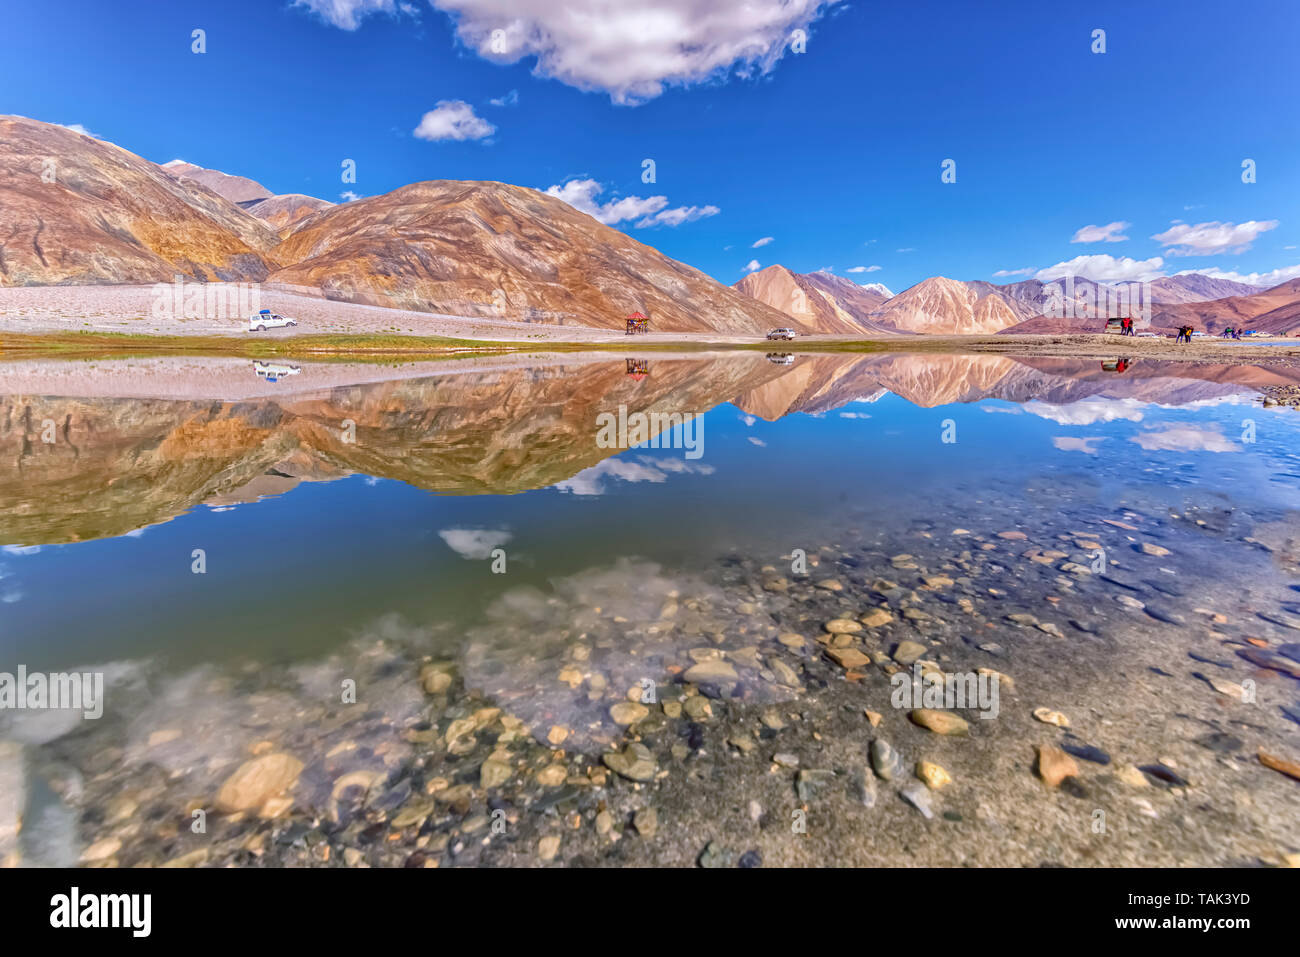 Riflessioni sulla Pangong Tso, conosciuto anche come Lago di Pangong, situato in Himalaya e situata ad una altezza di circa 14,270 ft. Il Tibetano di 'alta prateria lago". Foto Stock